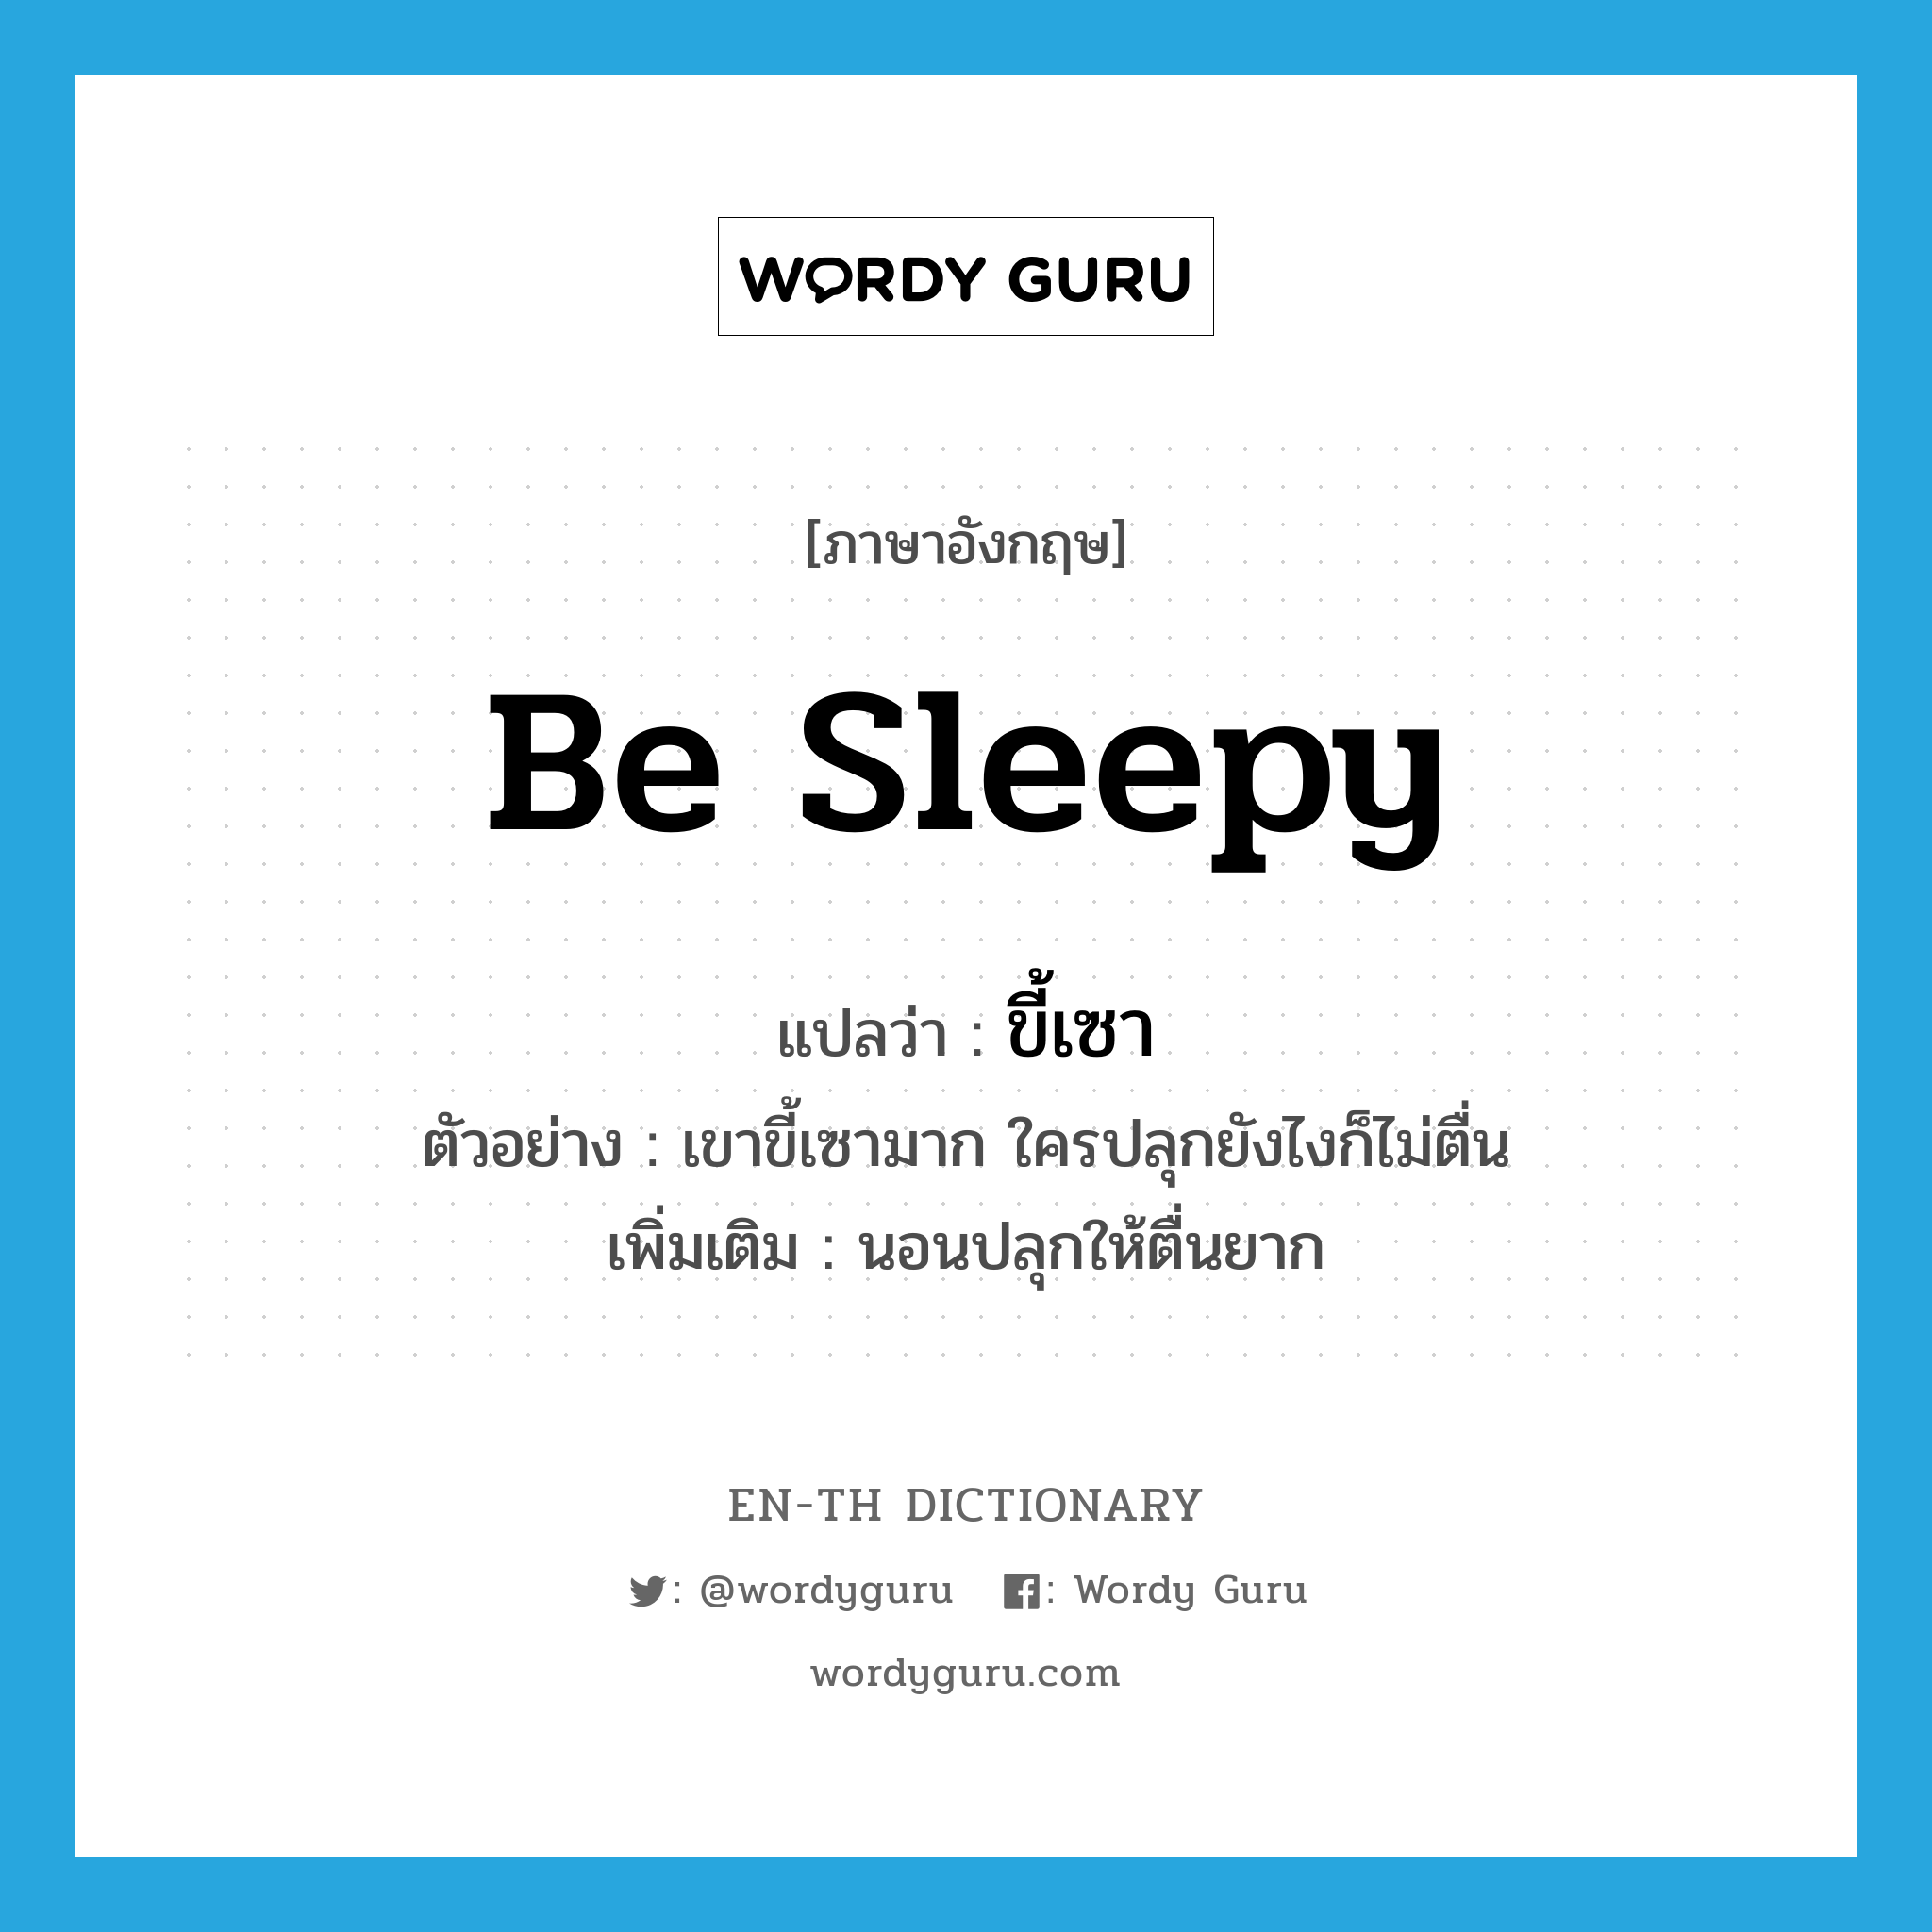 be sleepy แปลว่า?, คำศัพท์ภาษาอังกฤษ be sleepy แปลว่า ขี้เซา ประเภท V ตัวอย่าง เขาขี้เซามาก ใครปลุกยังไงก็ไม่ตื่น เพิ่มเติม นอนปลุกให้ตื่นยาก หมวด V